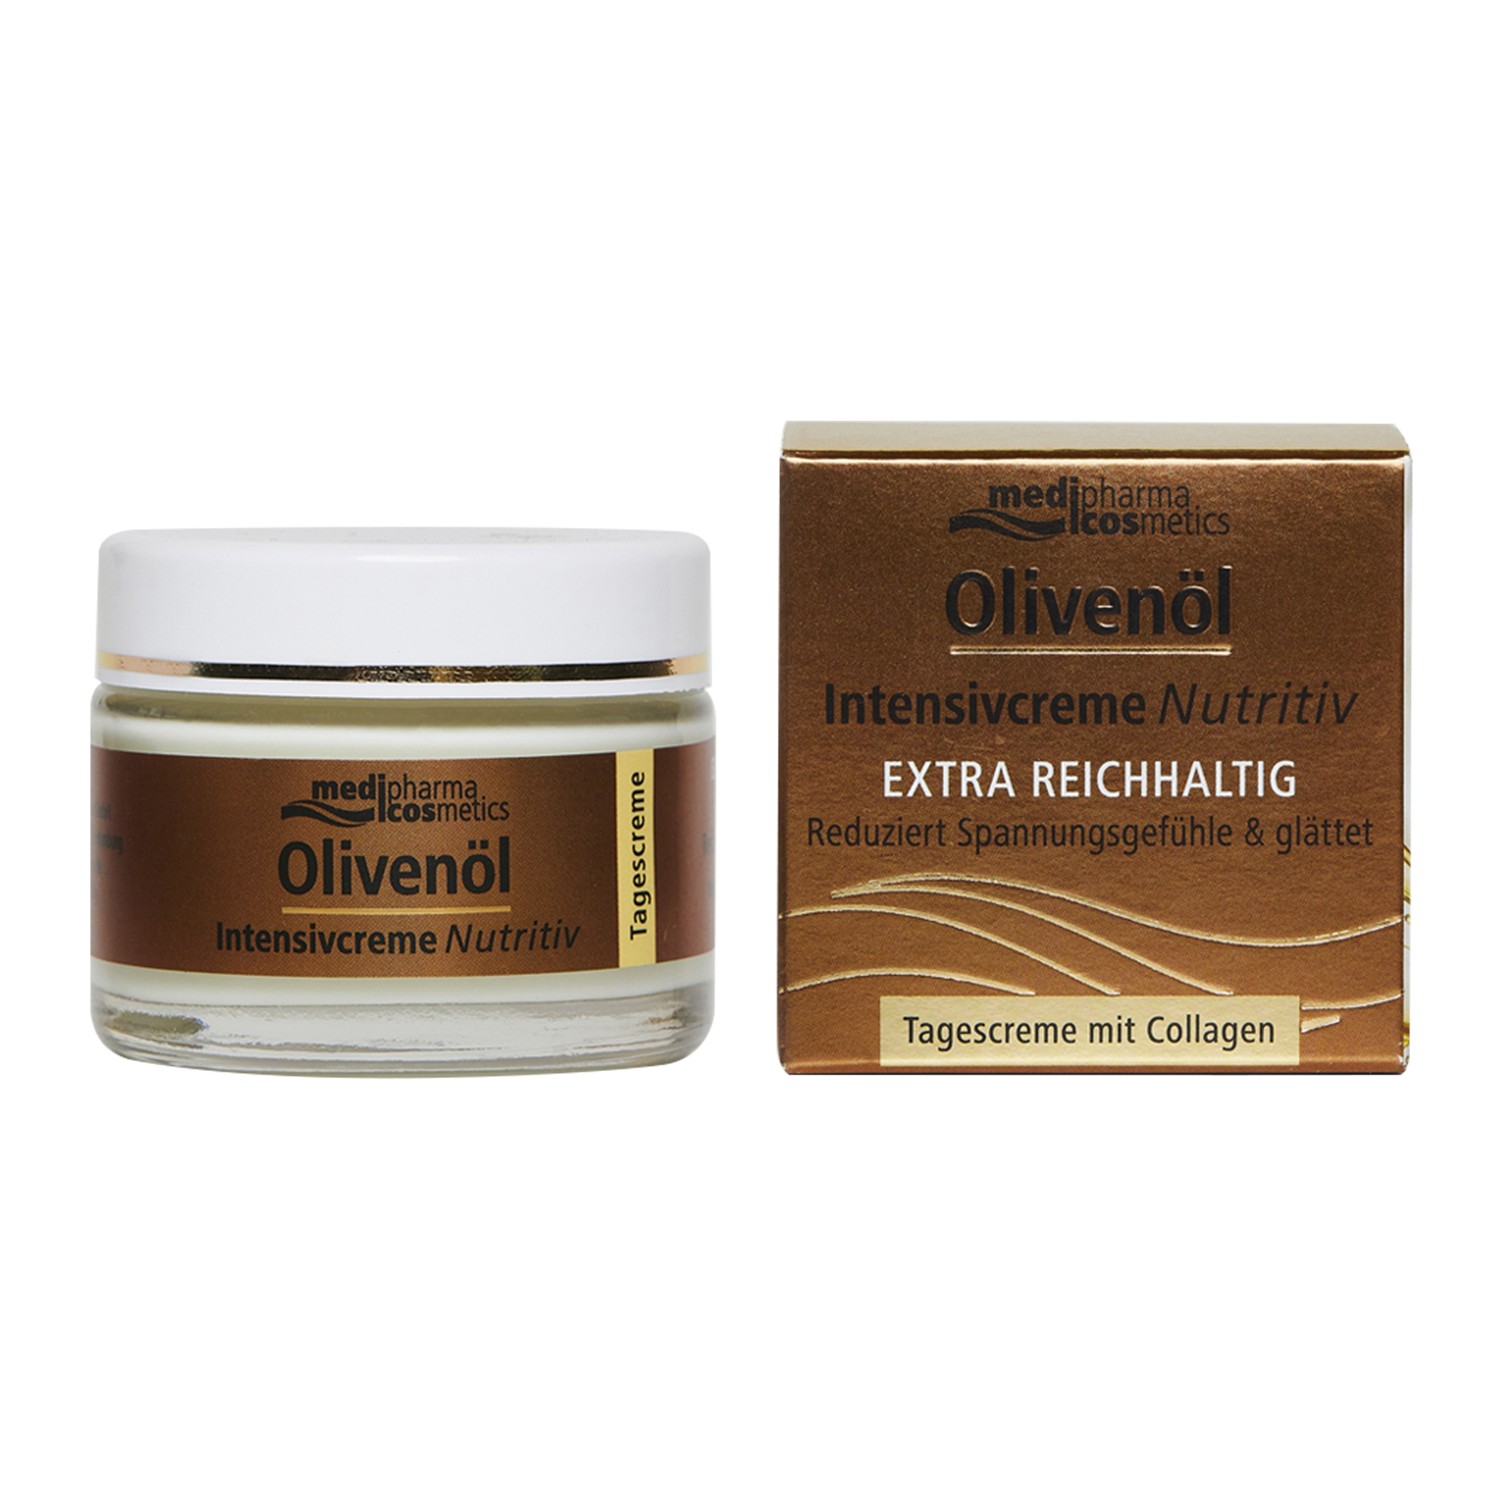 Купить Medipharma Cosmetics Дневной питательный крем для лица Olivenol Intensiv, 50 мл (Medipharma Cosmetics, Olivenol), Германия